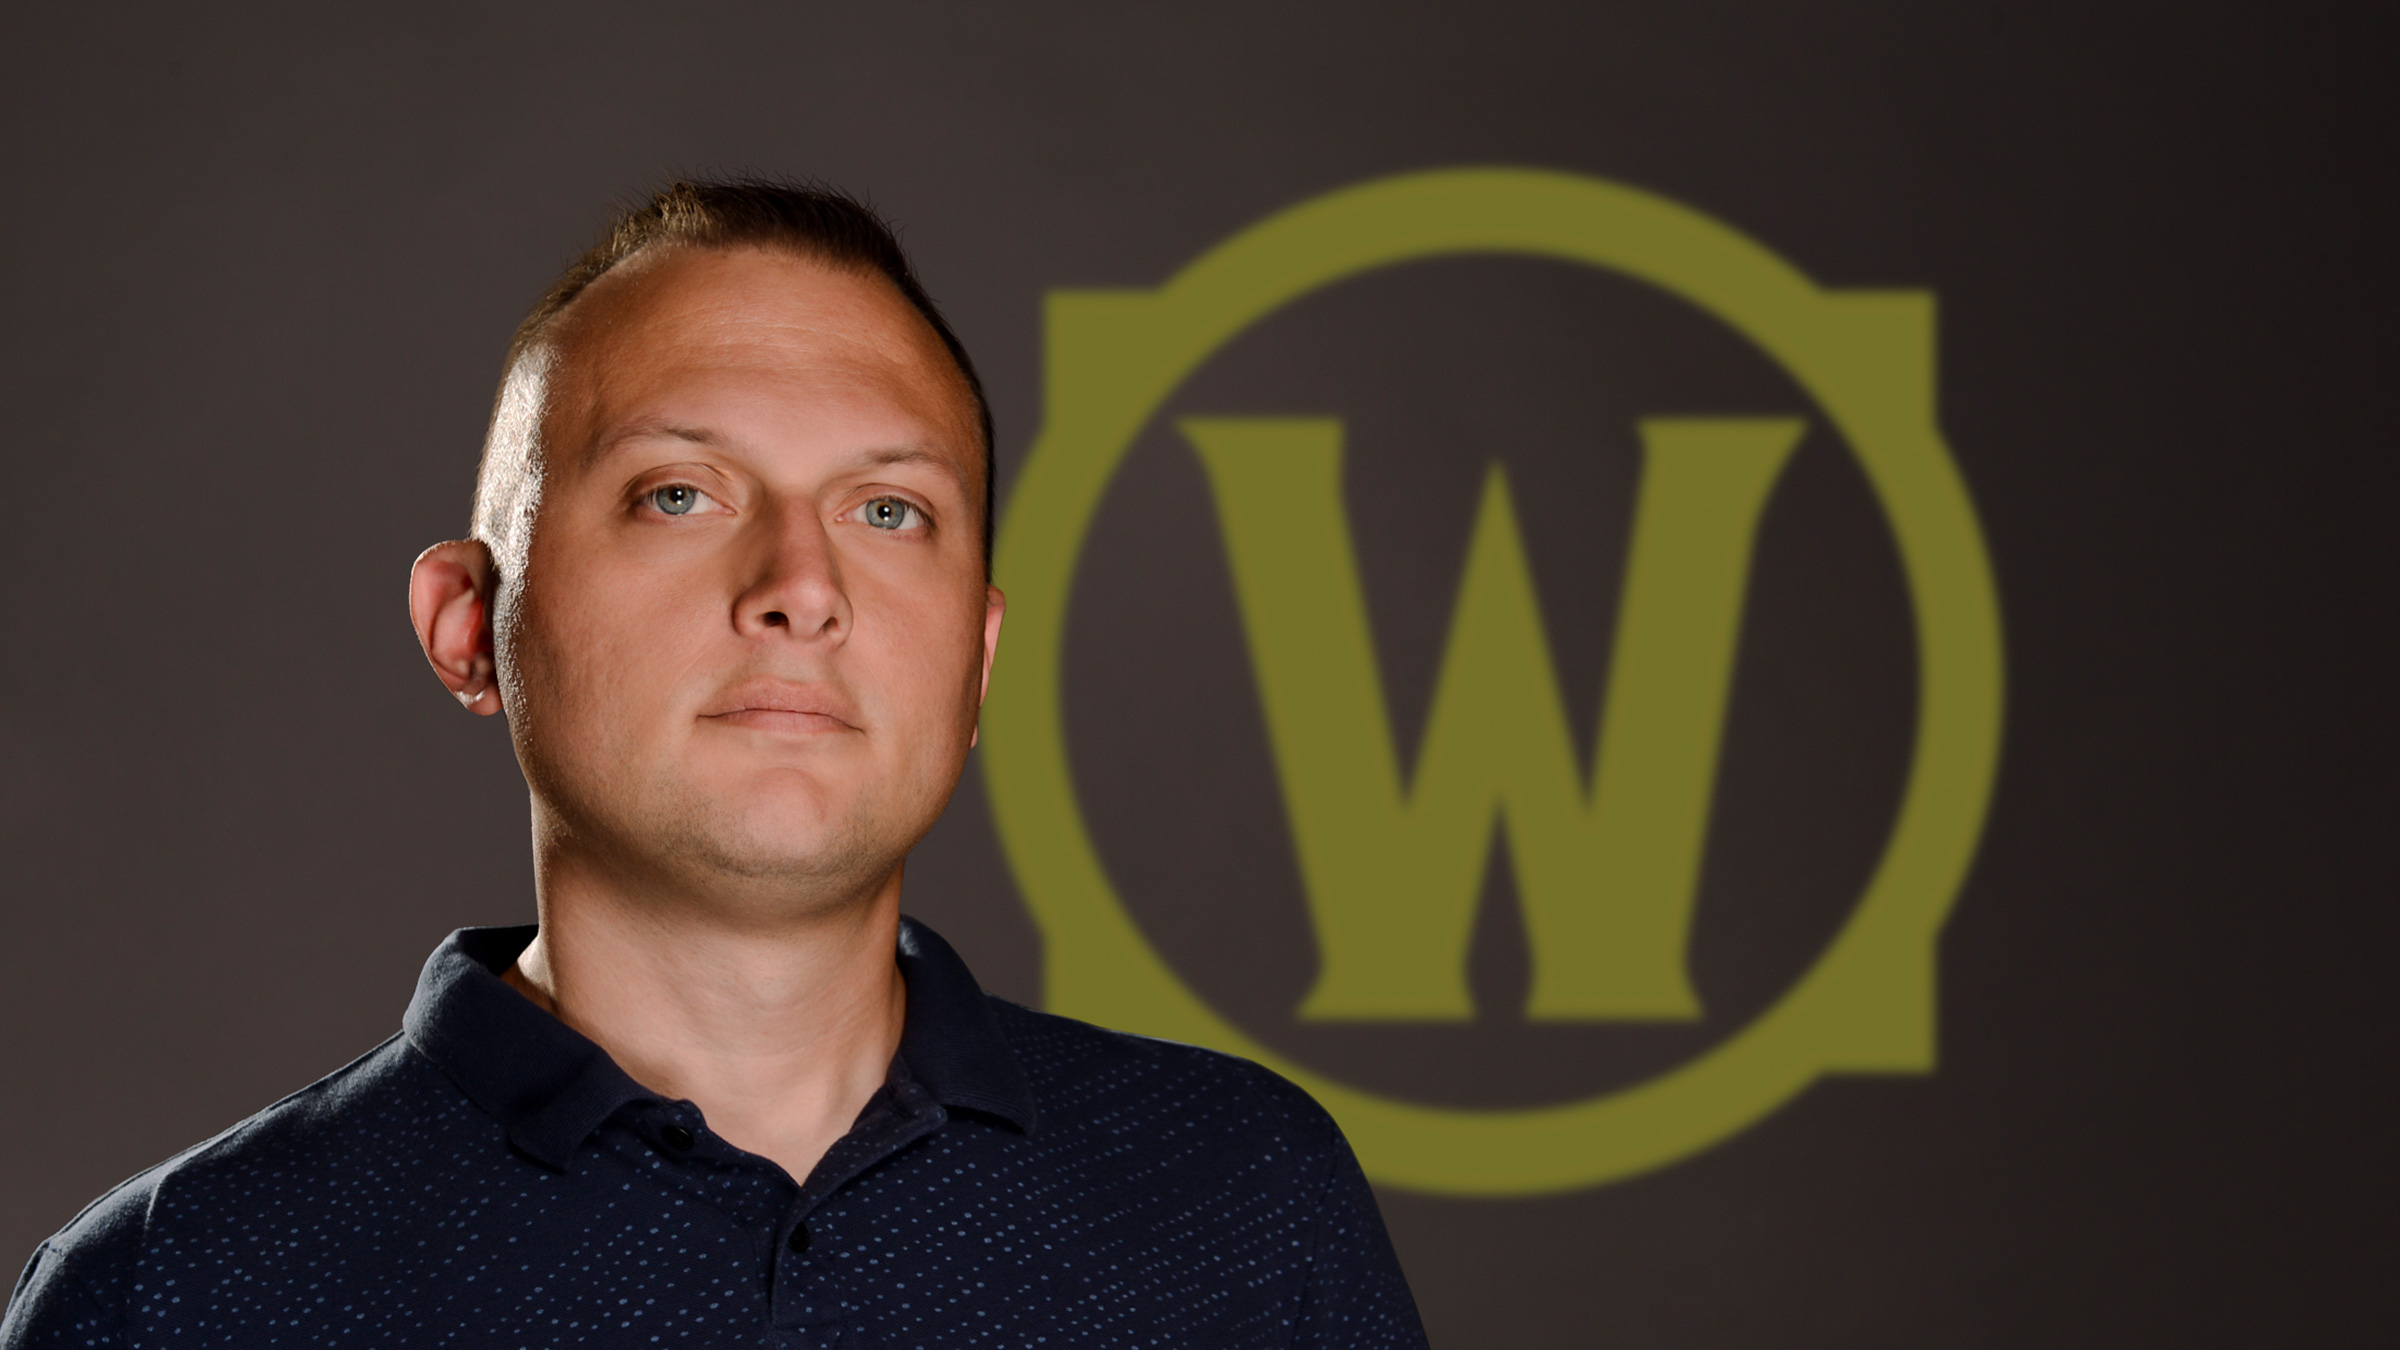 Wywiad twórcy treści WoW EU z Ionem Hazzikostasem w łatce 10.0.7